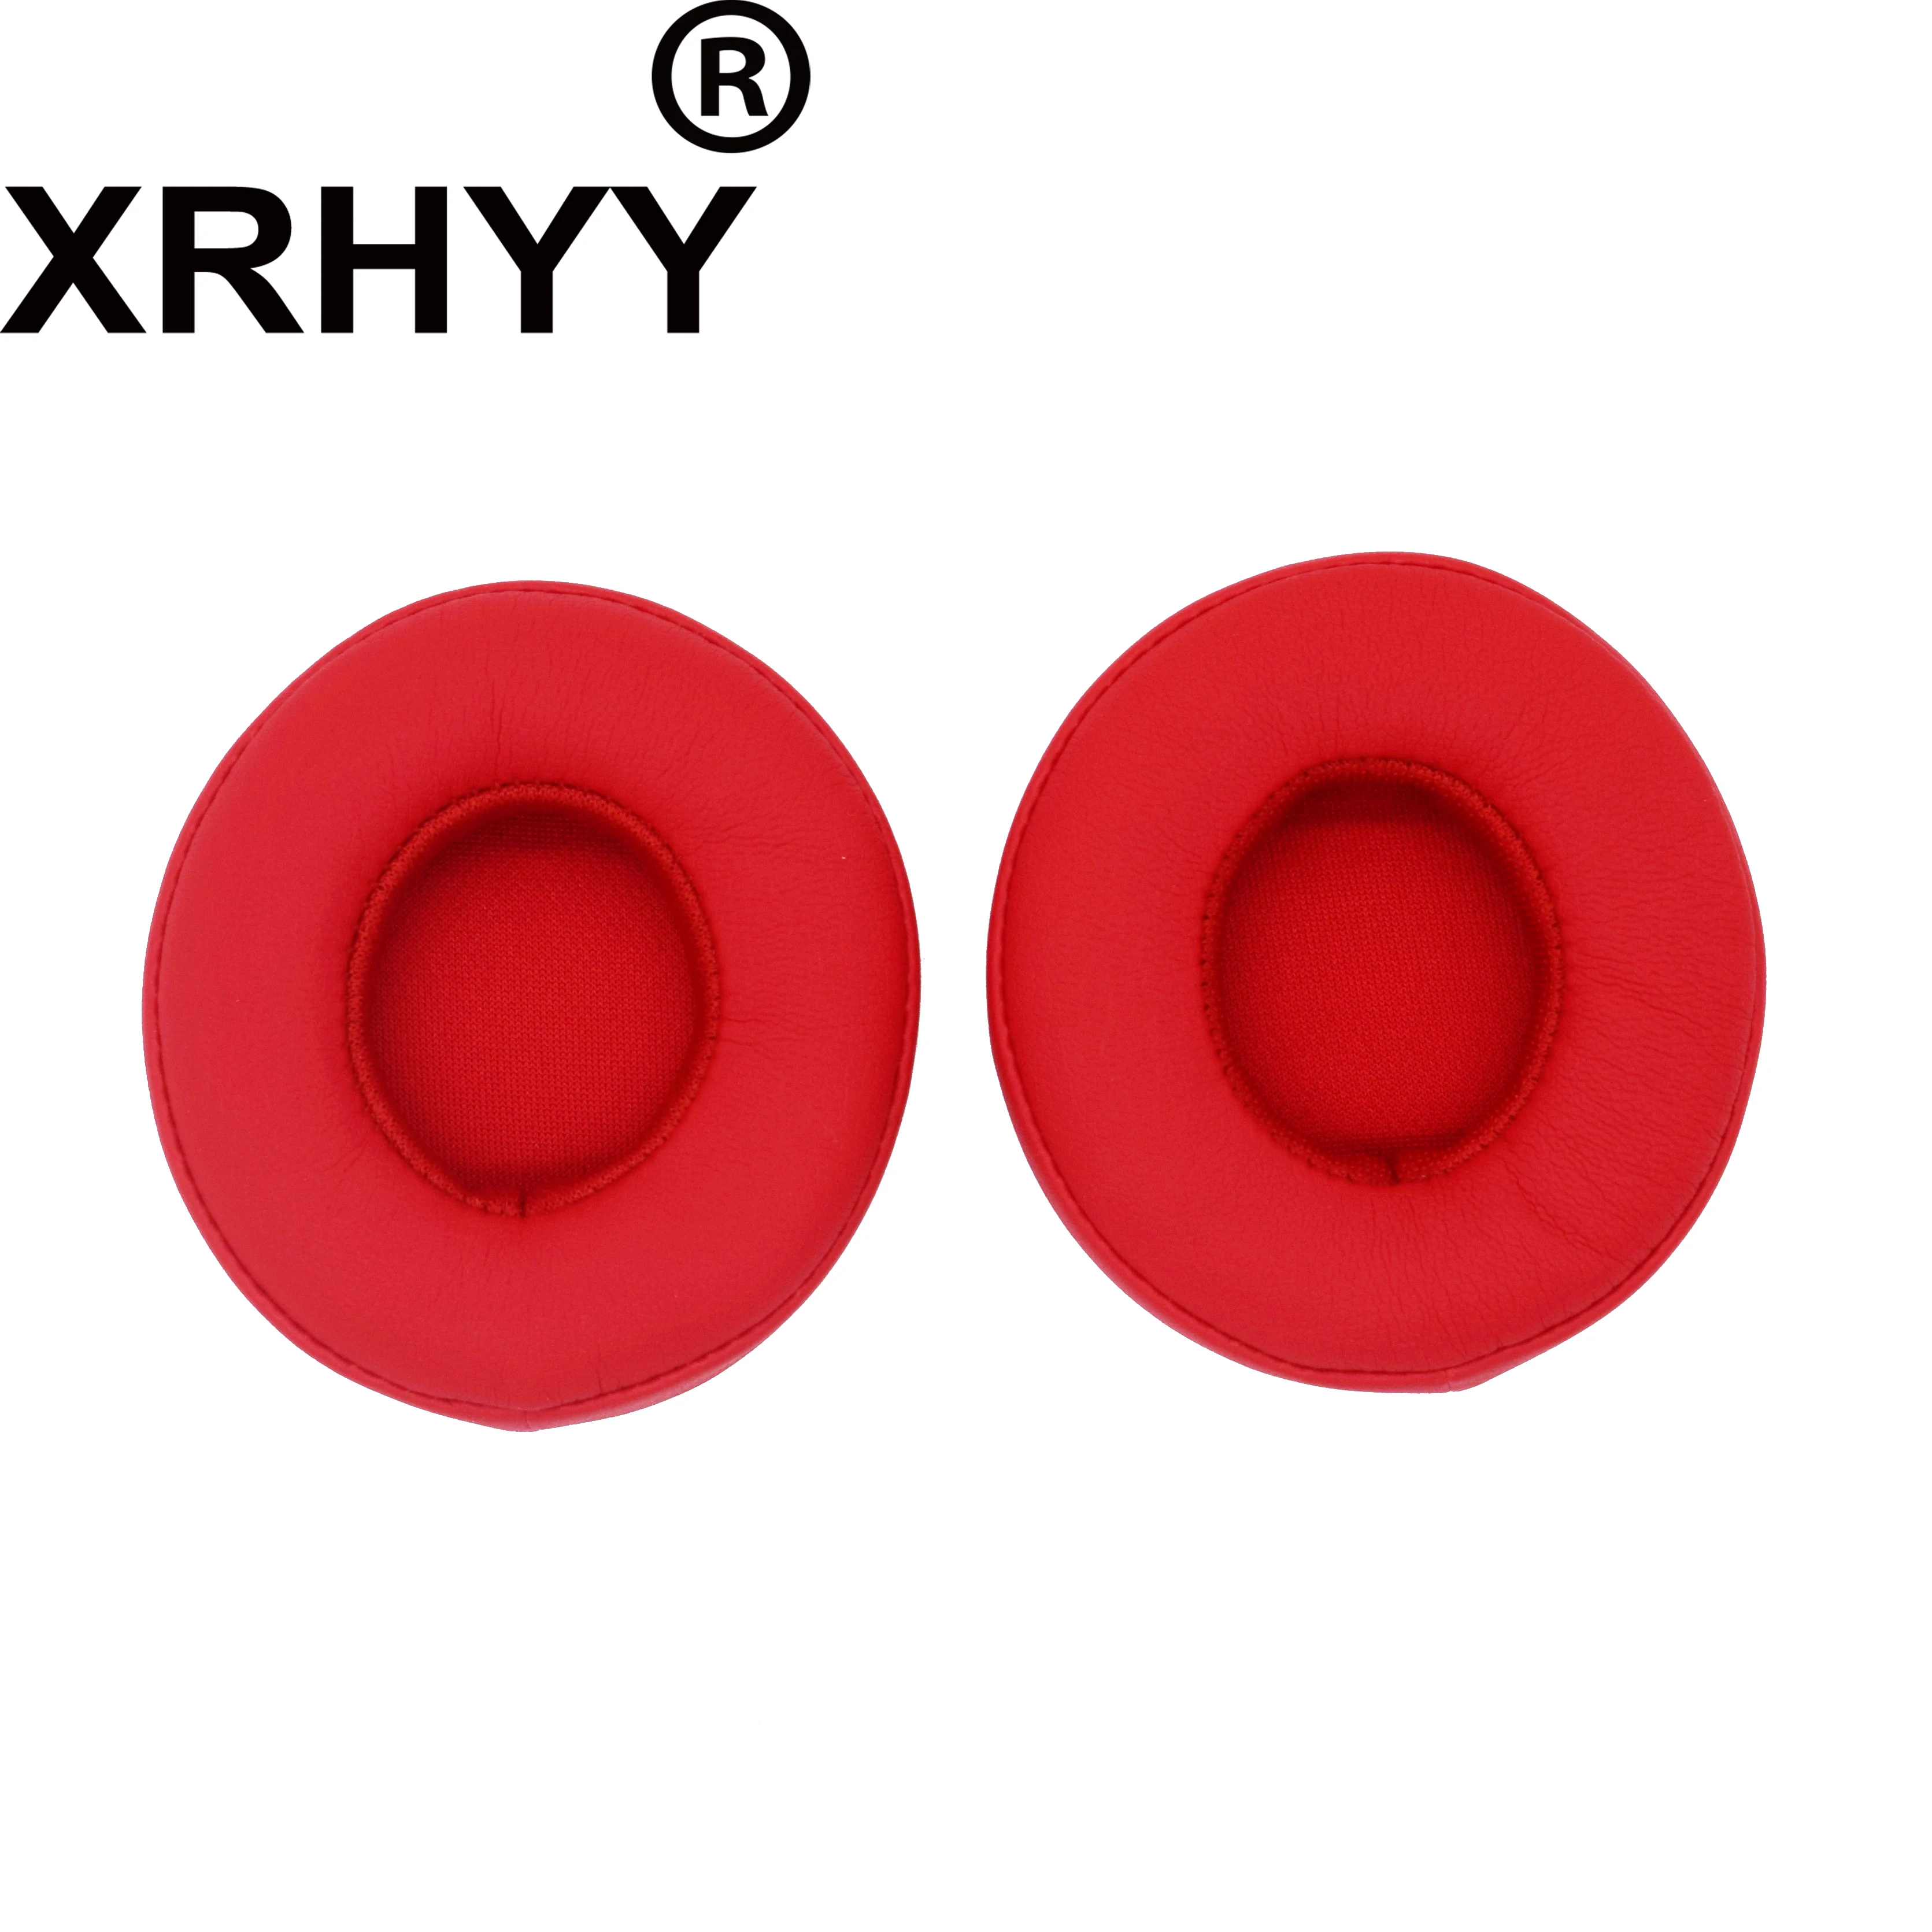 XRHYY красный кожаный чехол сменные амбушюры Подушка для Beats от Dr. Dre Solo 2,0 Solo2 беспроводные/проводные наушники